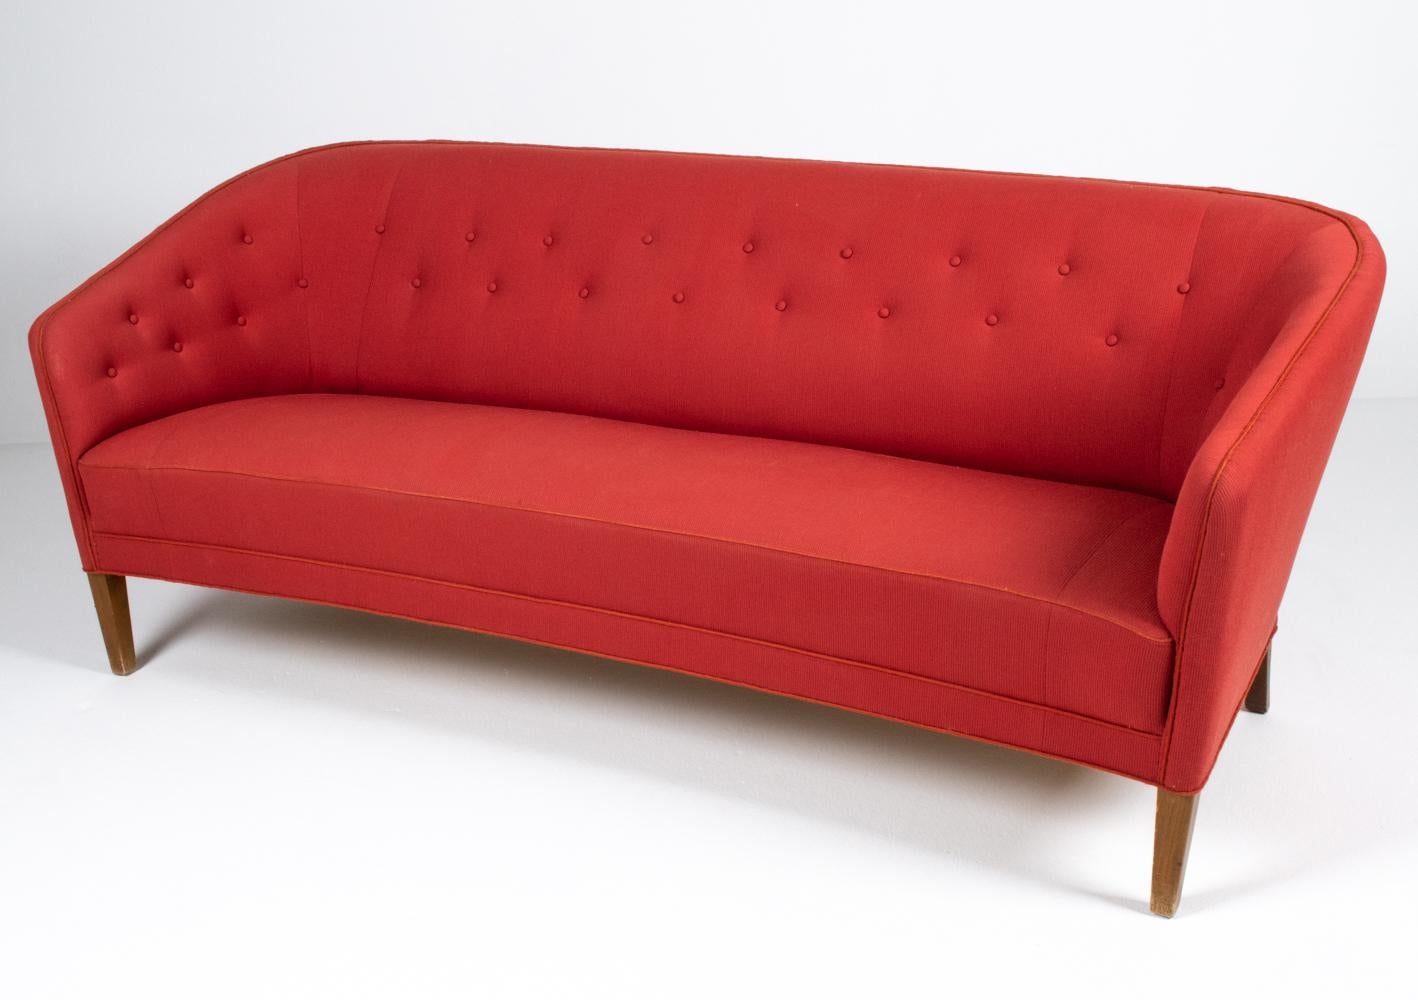 Rare et important canapé à trois places de l'architecte et designer de meubles danois Ludvig Pontoppidan (1883-1962). L'une des premières figures du design moderne scandinave, les créations avant-gardistes de Pontoppidan se sont imposées dans les